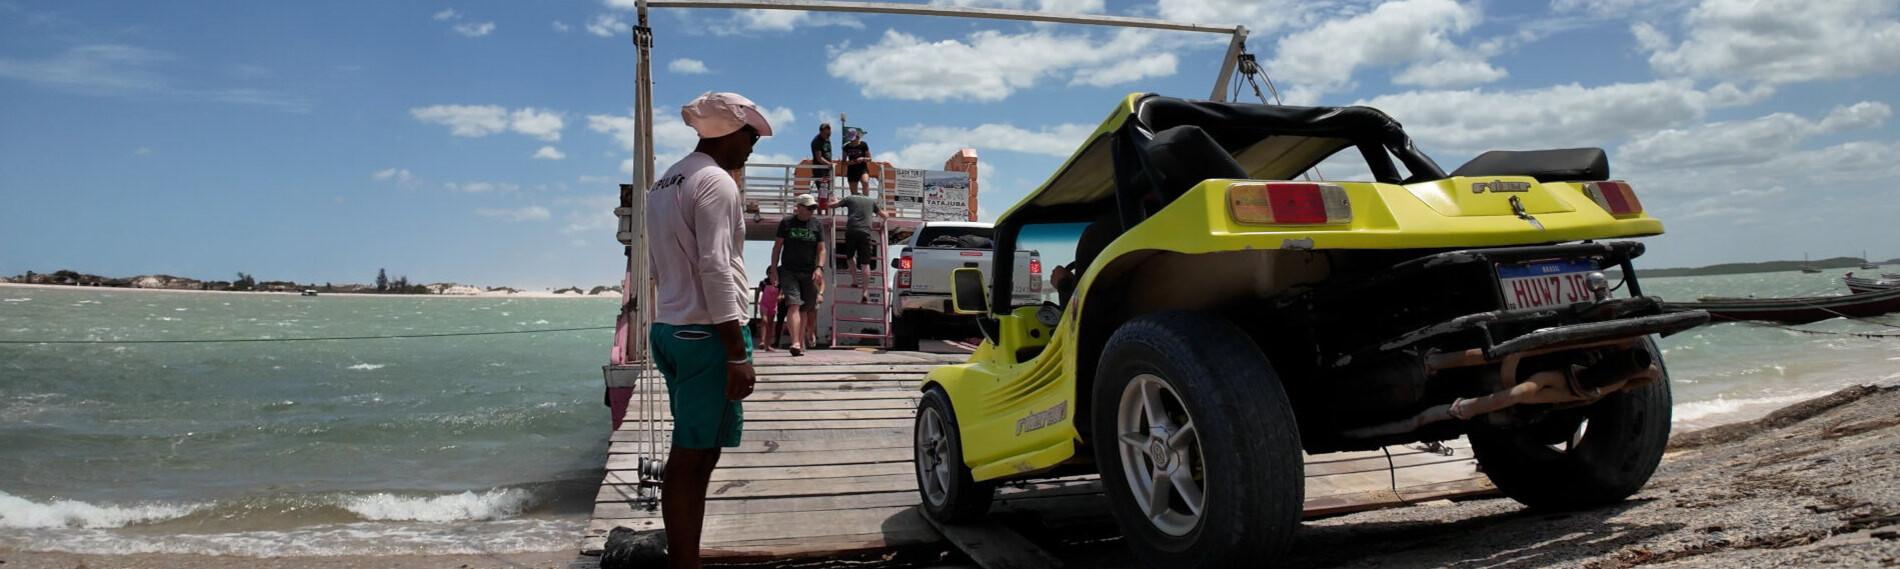 Menschen am Strand gehen auf eine Fähre nach Jericoacoara zu, neben ihnen ein gelber Jeep